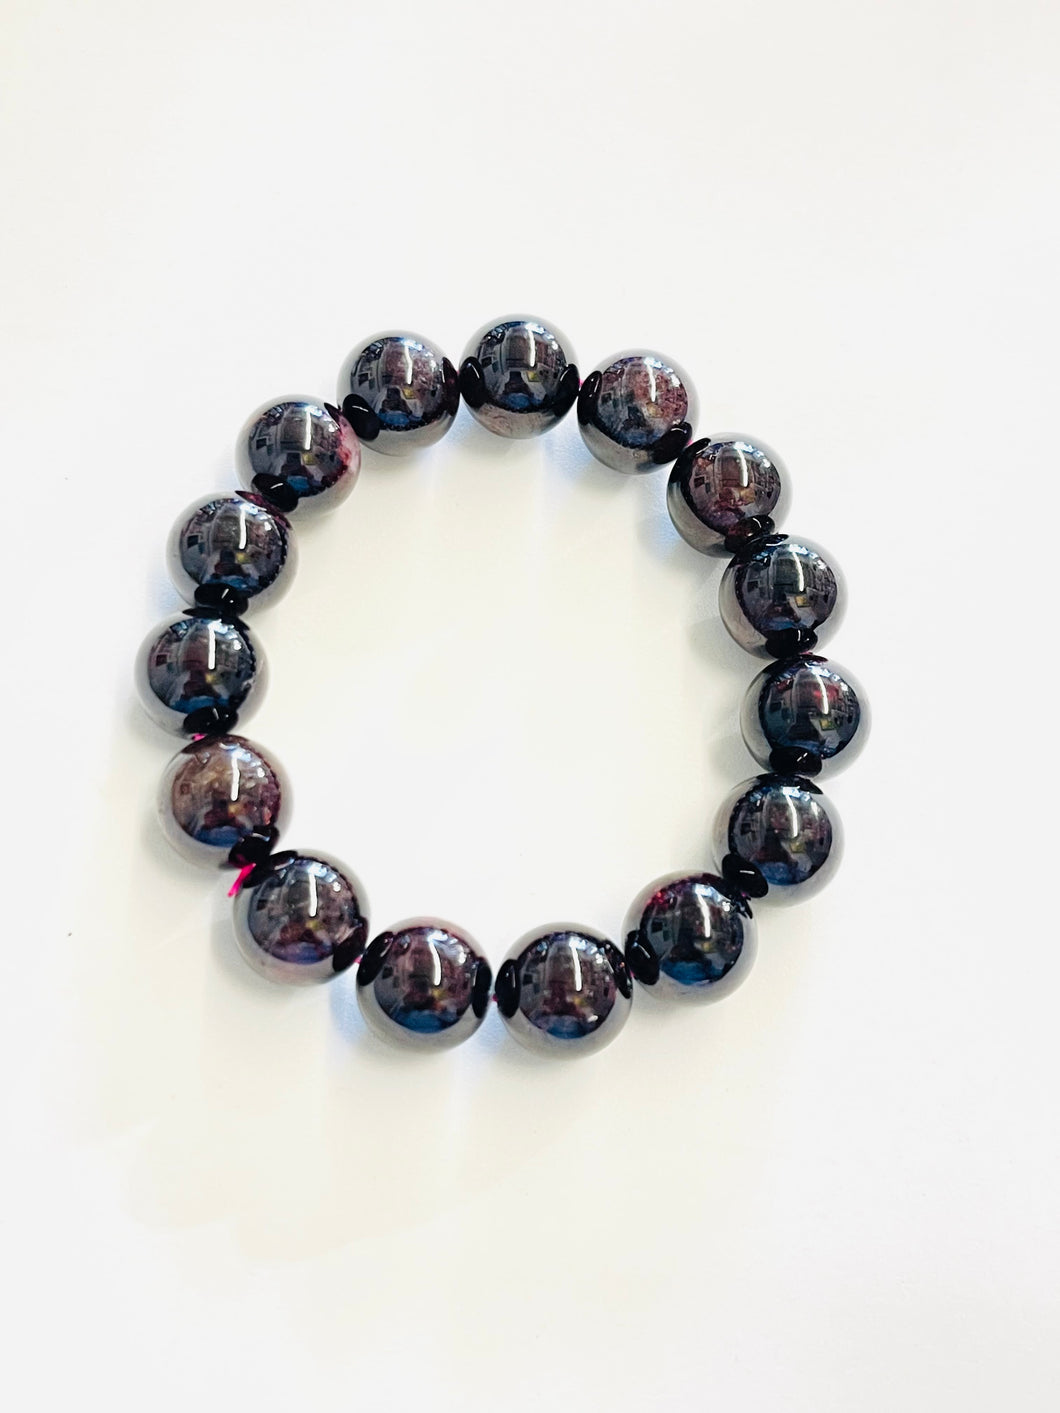 Bracelet with garnet stone beads